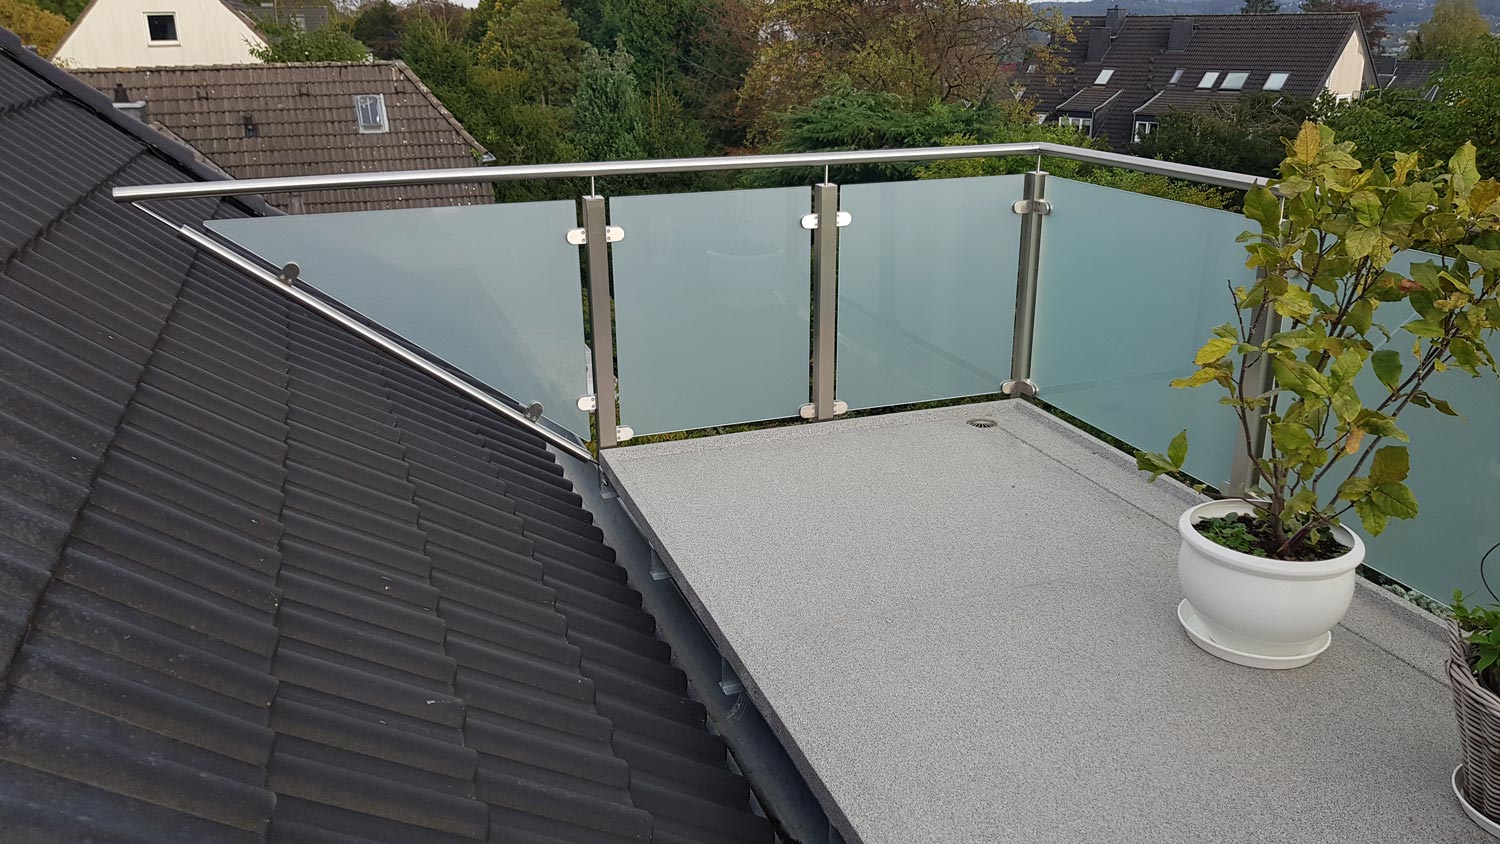 Über den Dächern von Essen: Balkon im Dachgeschoss, gebaut und umgesetzt von der Edelstahlschlosserei Nappenfeld aus Mülheim